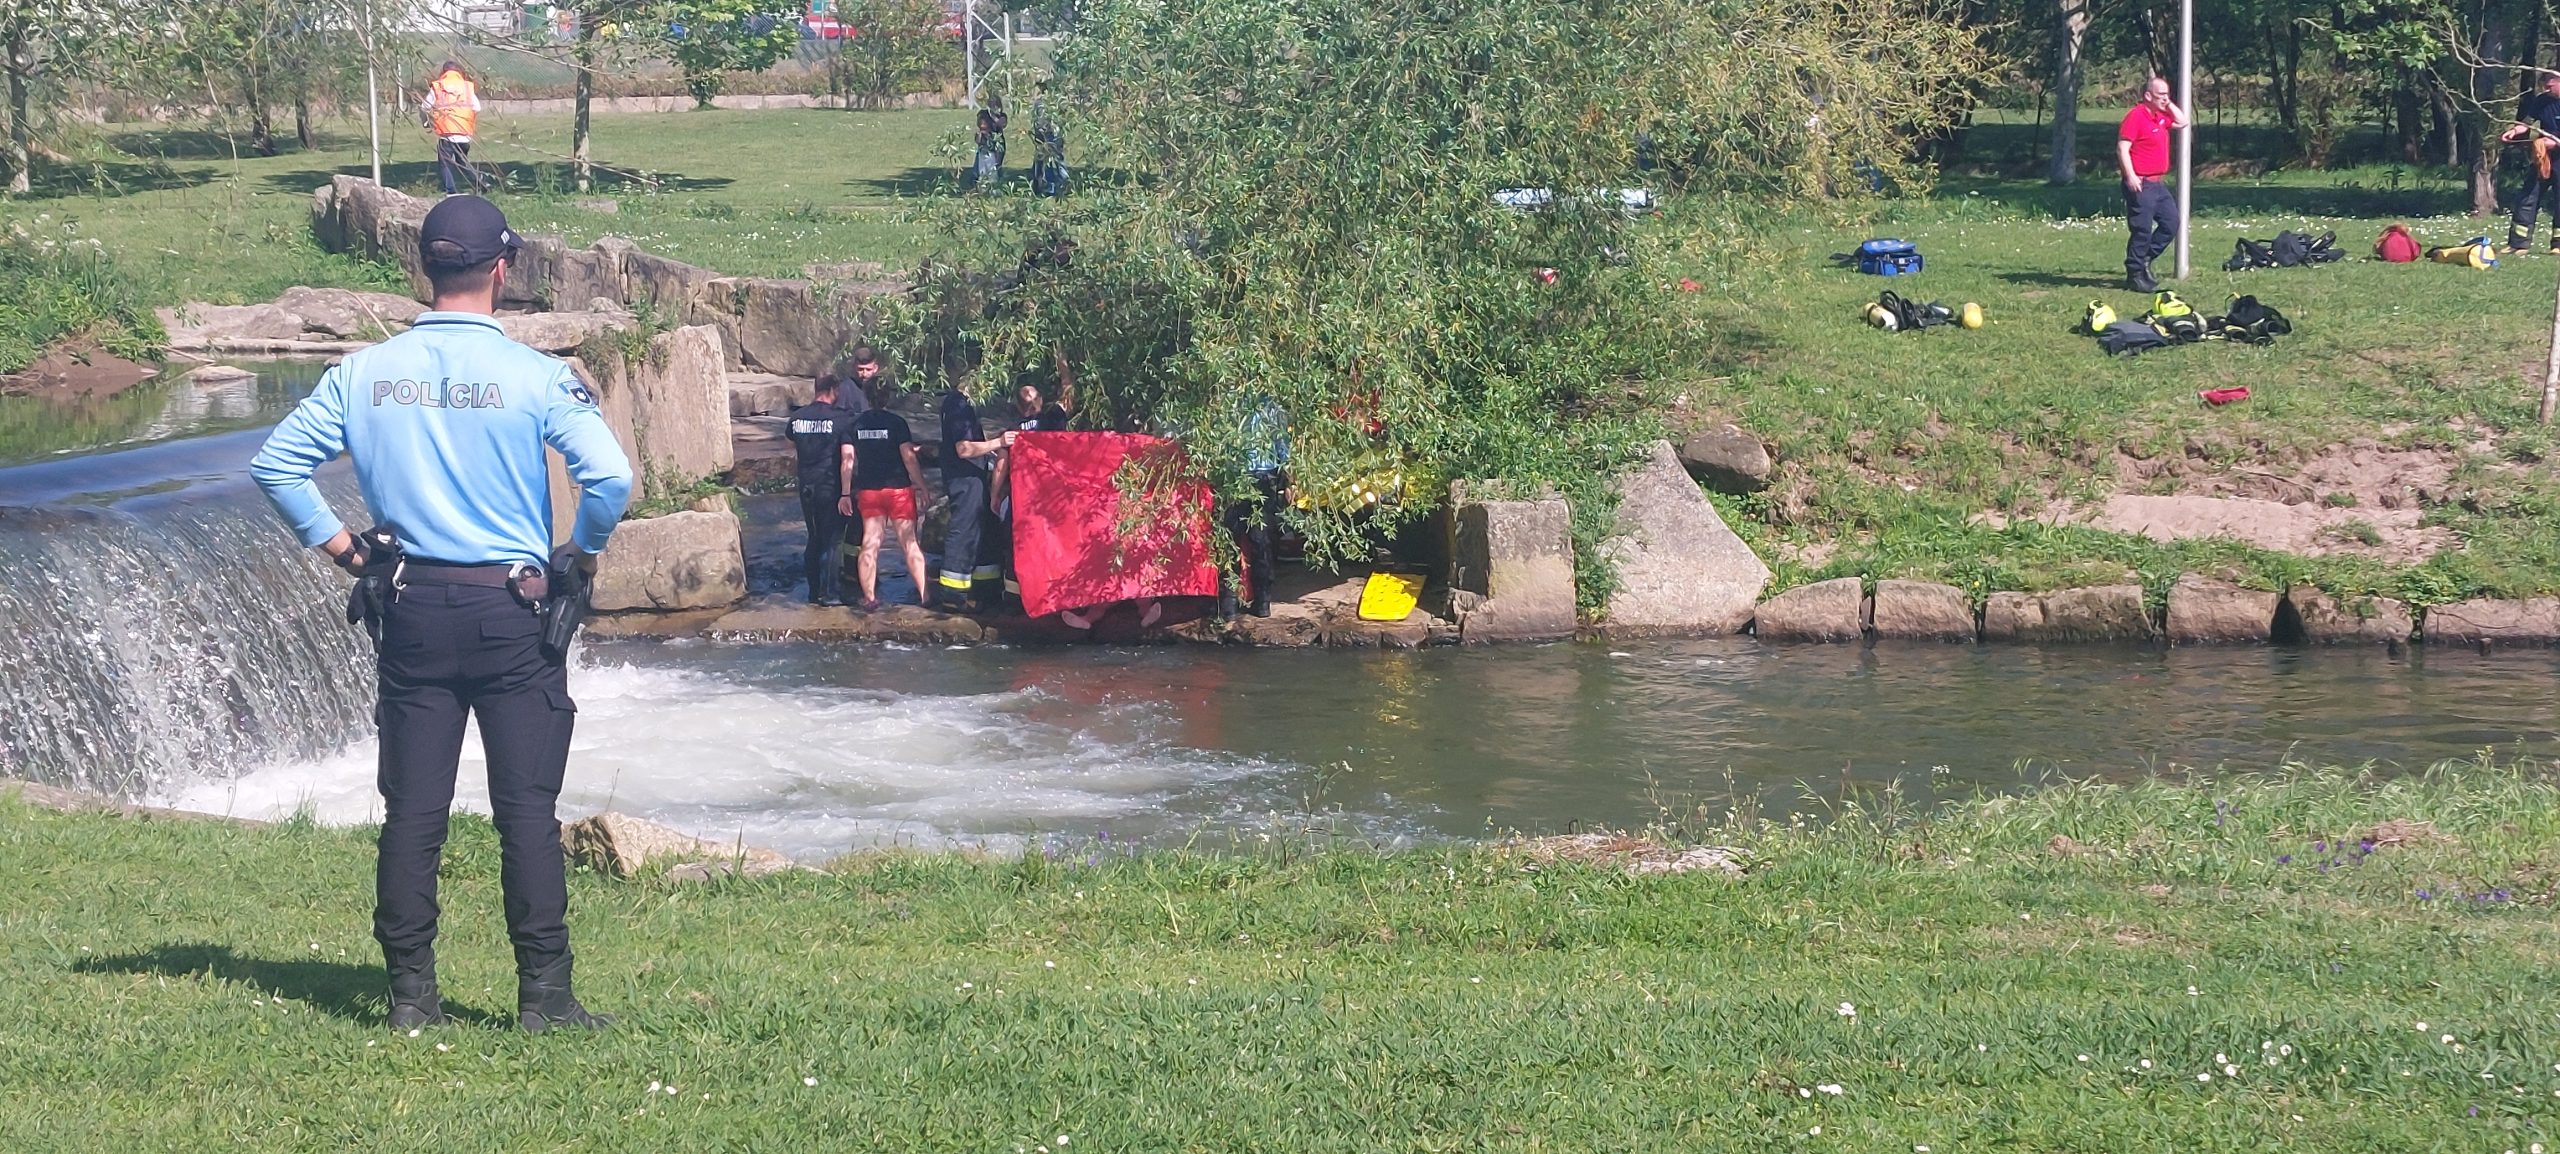 Homem morre afogado no rio Cáster em Ovar